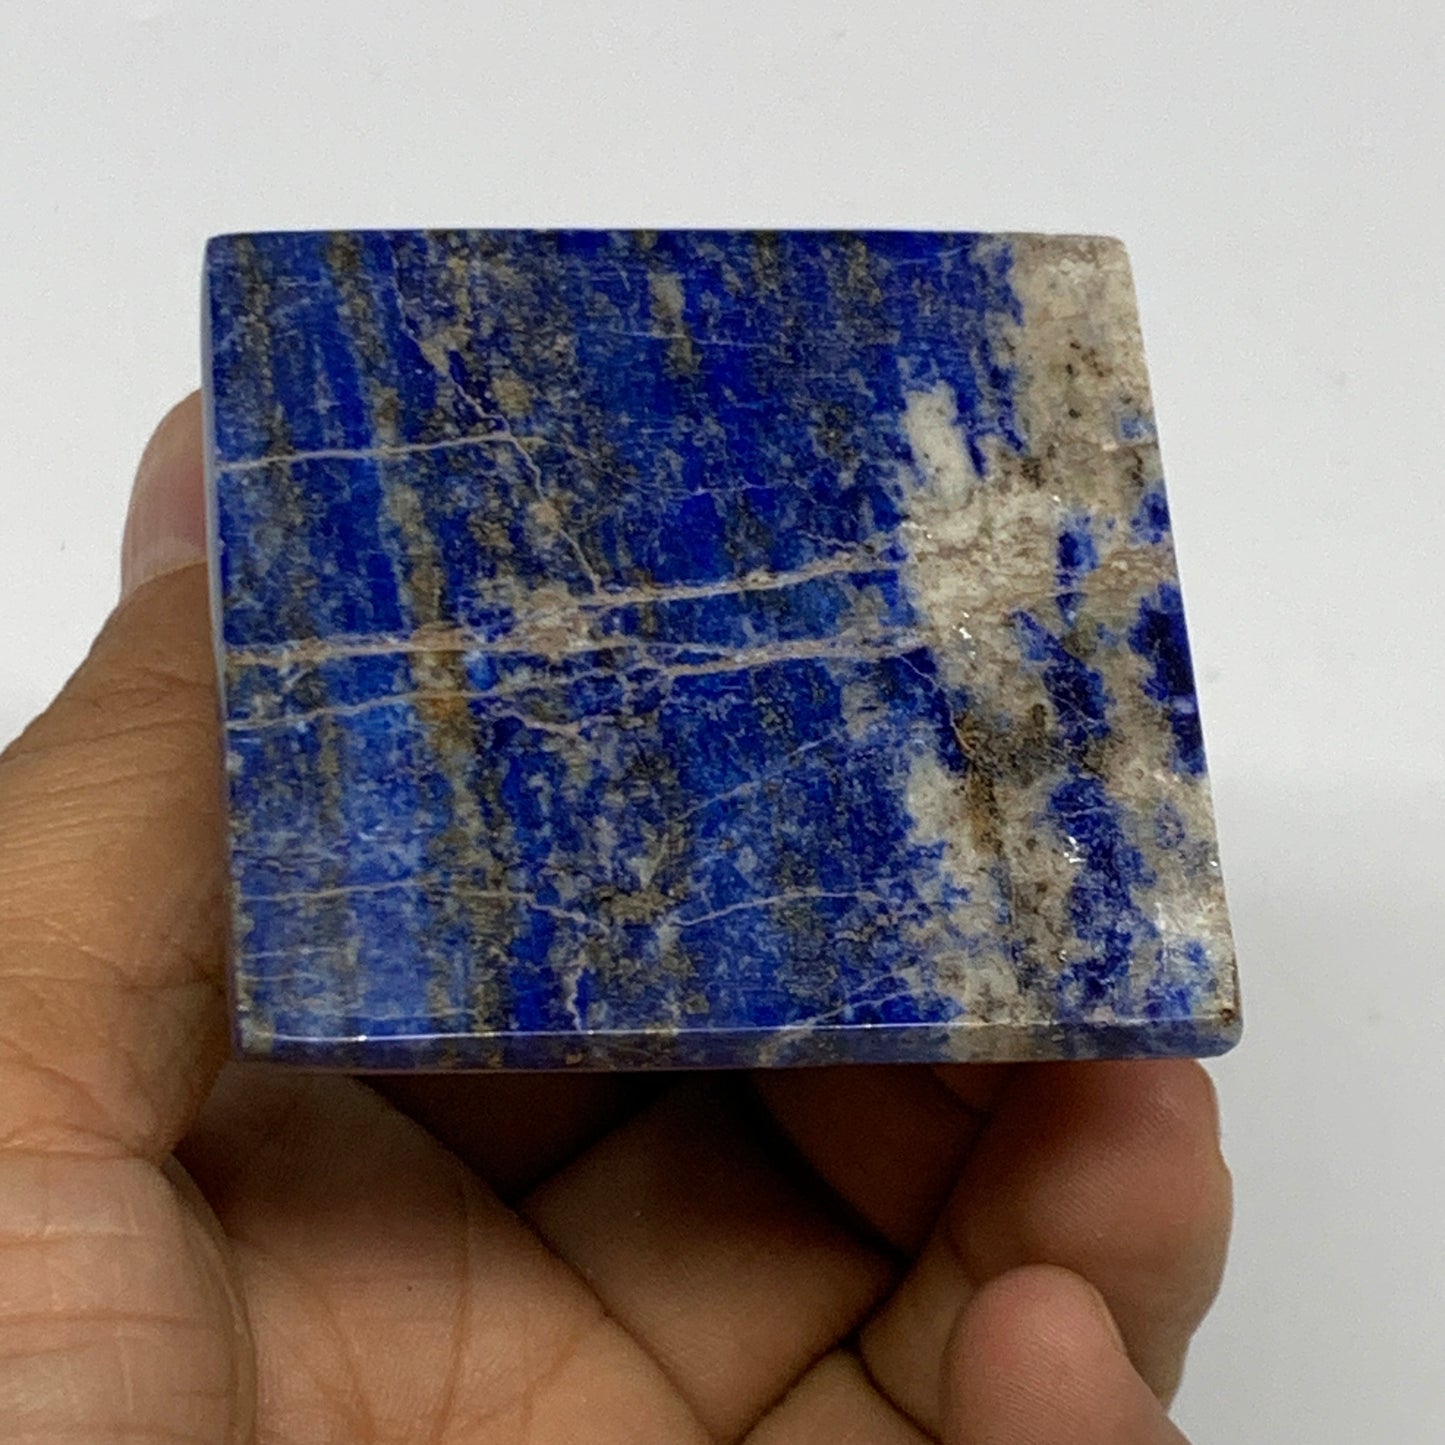 146g, 1.8"x2"x2", Lapis Lazuli Pyramid Crystal Gemstone @Afghanistan, B27801